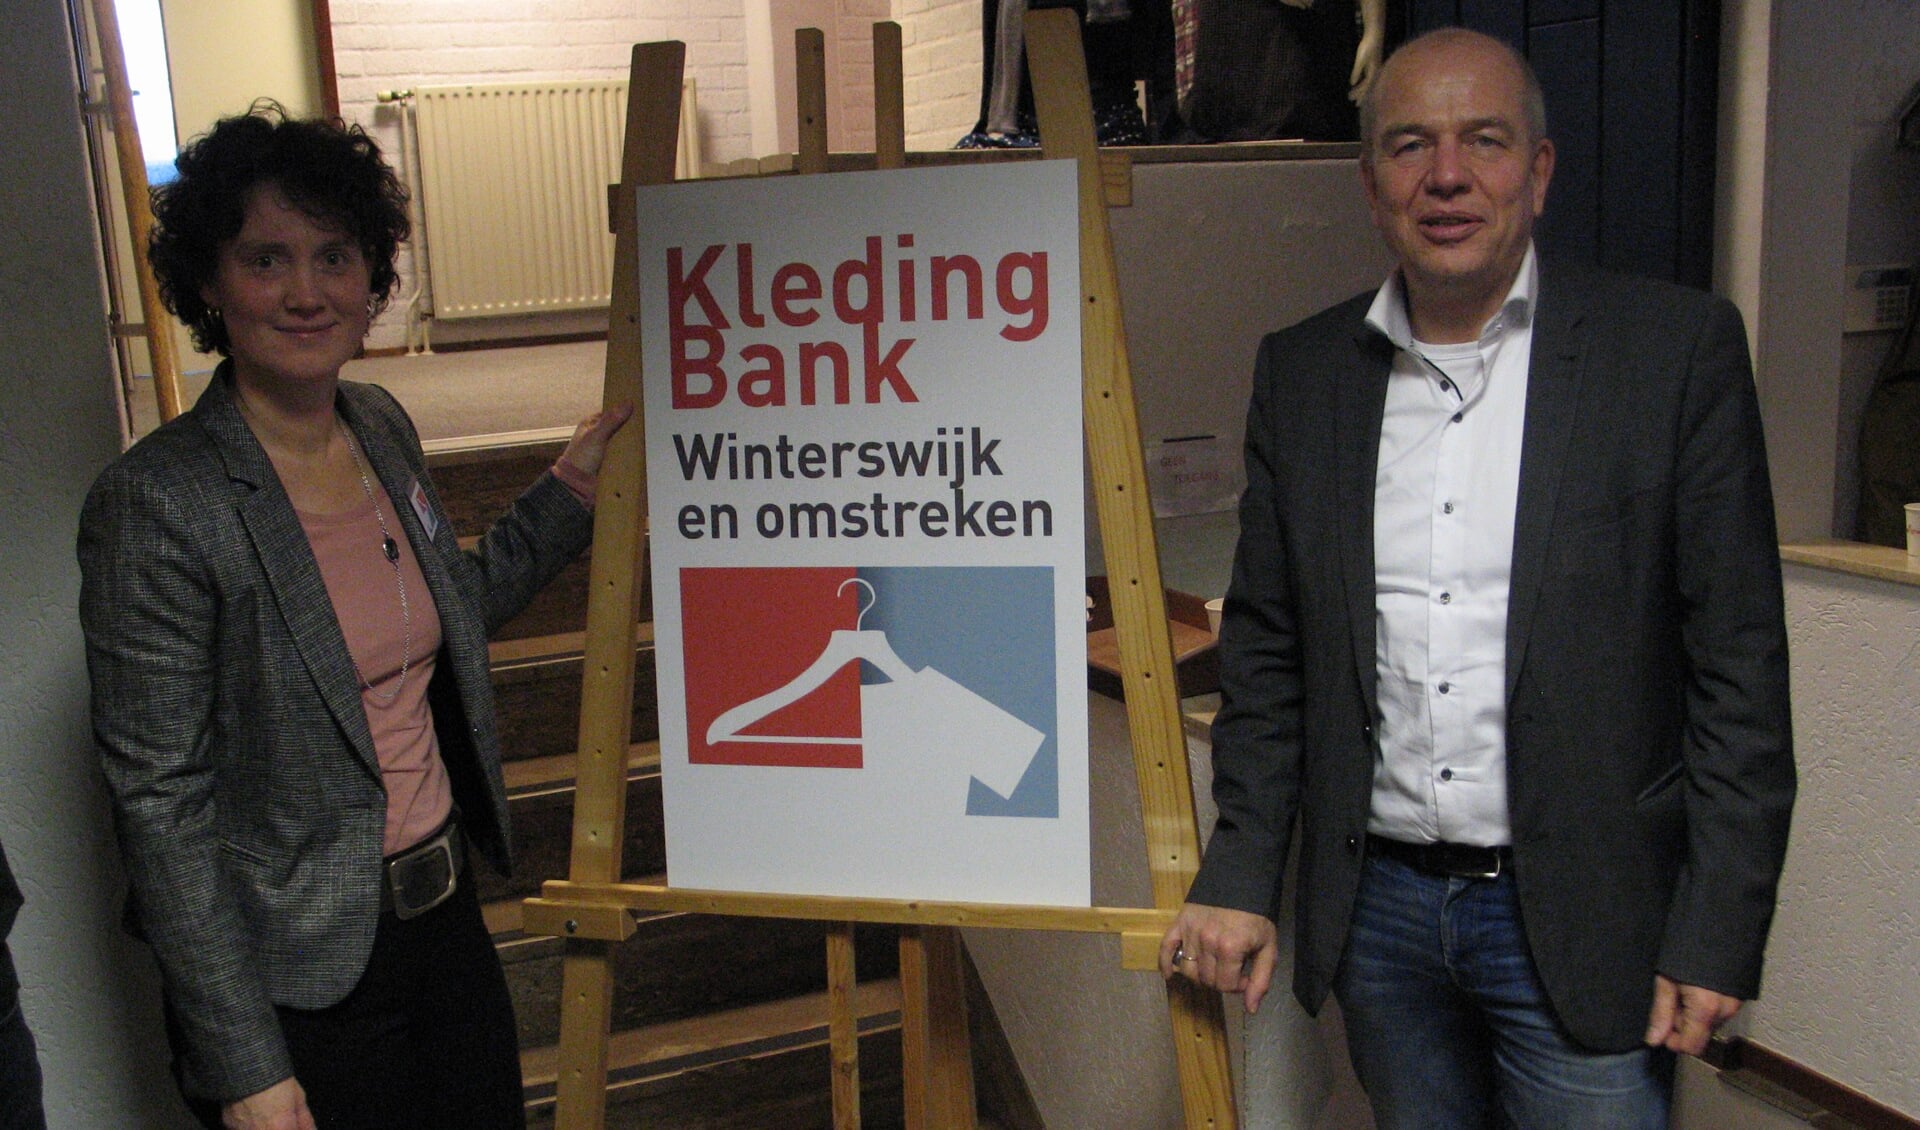 Femke Koster van de Kledingbank en wethouder Aalderink hebben de nieuwe locatie geopend. Foto: Bernhard Harfsterkamp